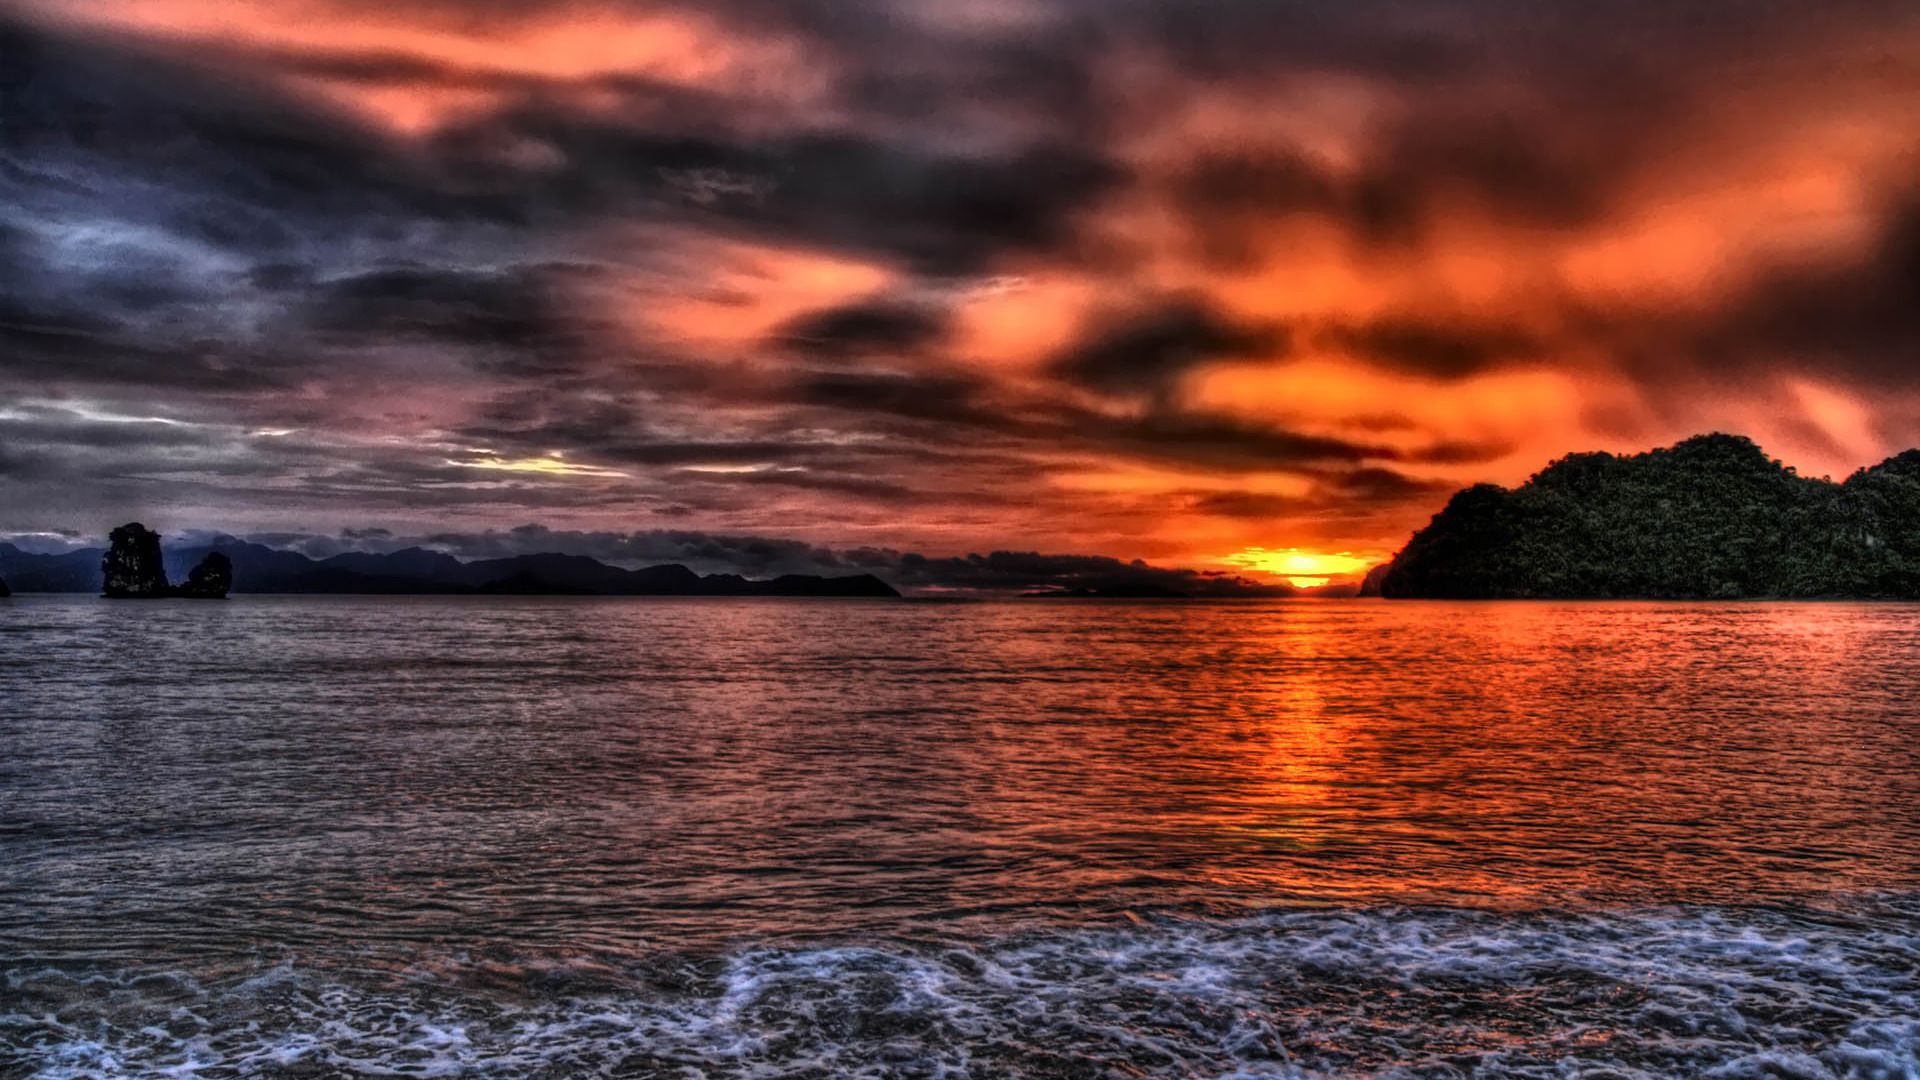 Free download Sunset Beach Wallpaper HD downloadwallpaperorg